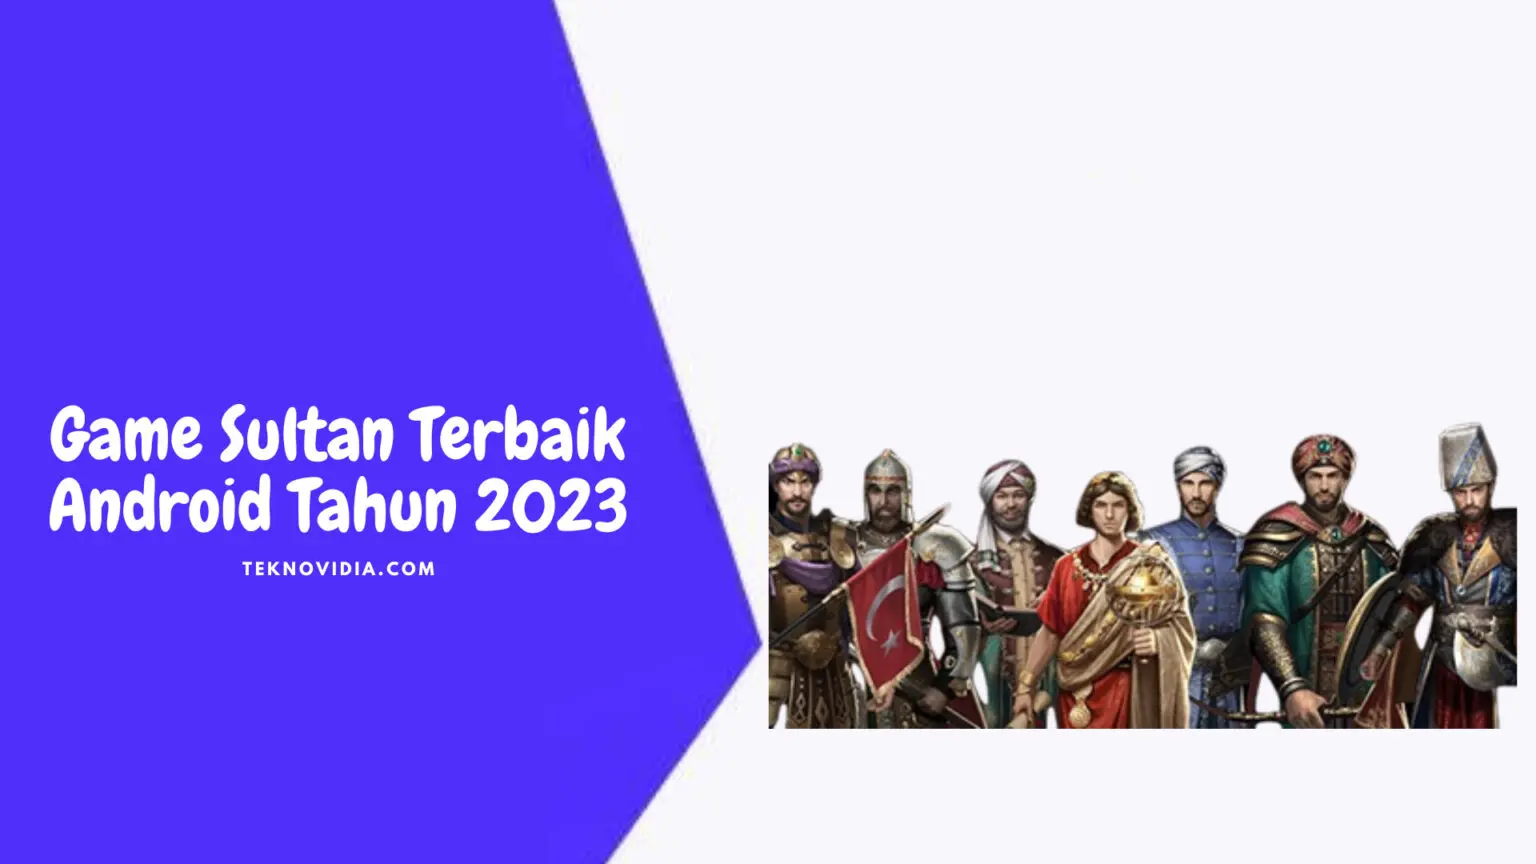 Game Sultan Terbaik Android Tahun 2023